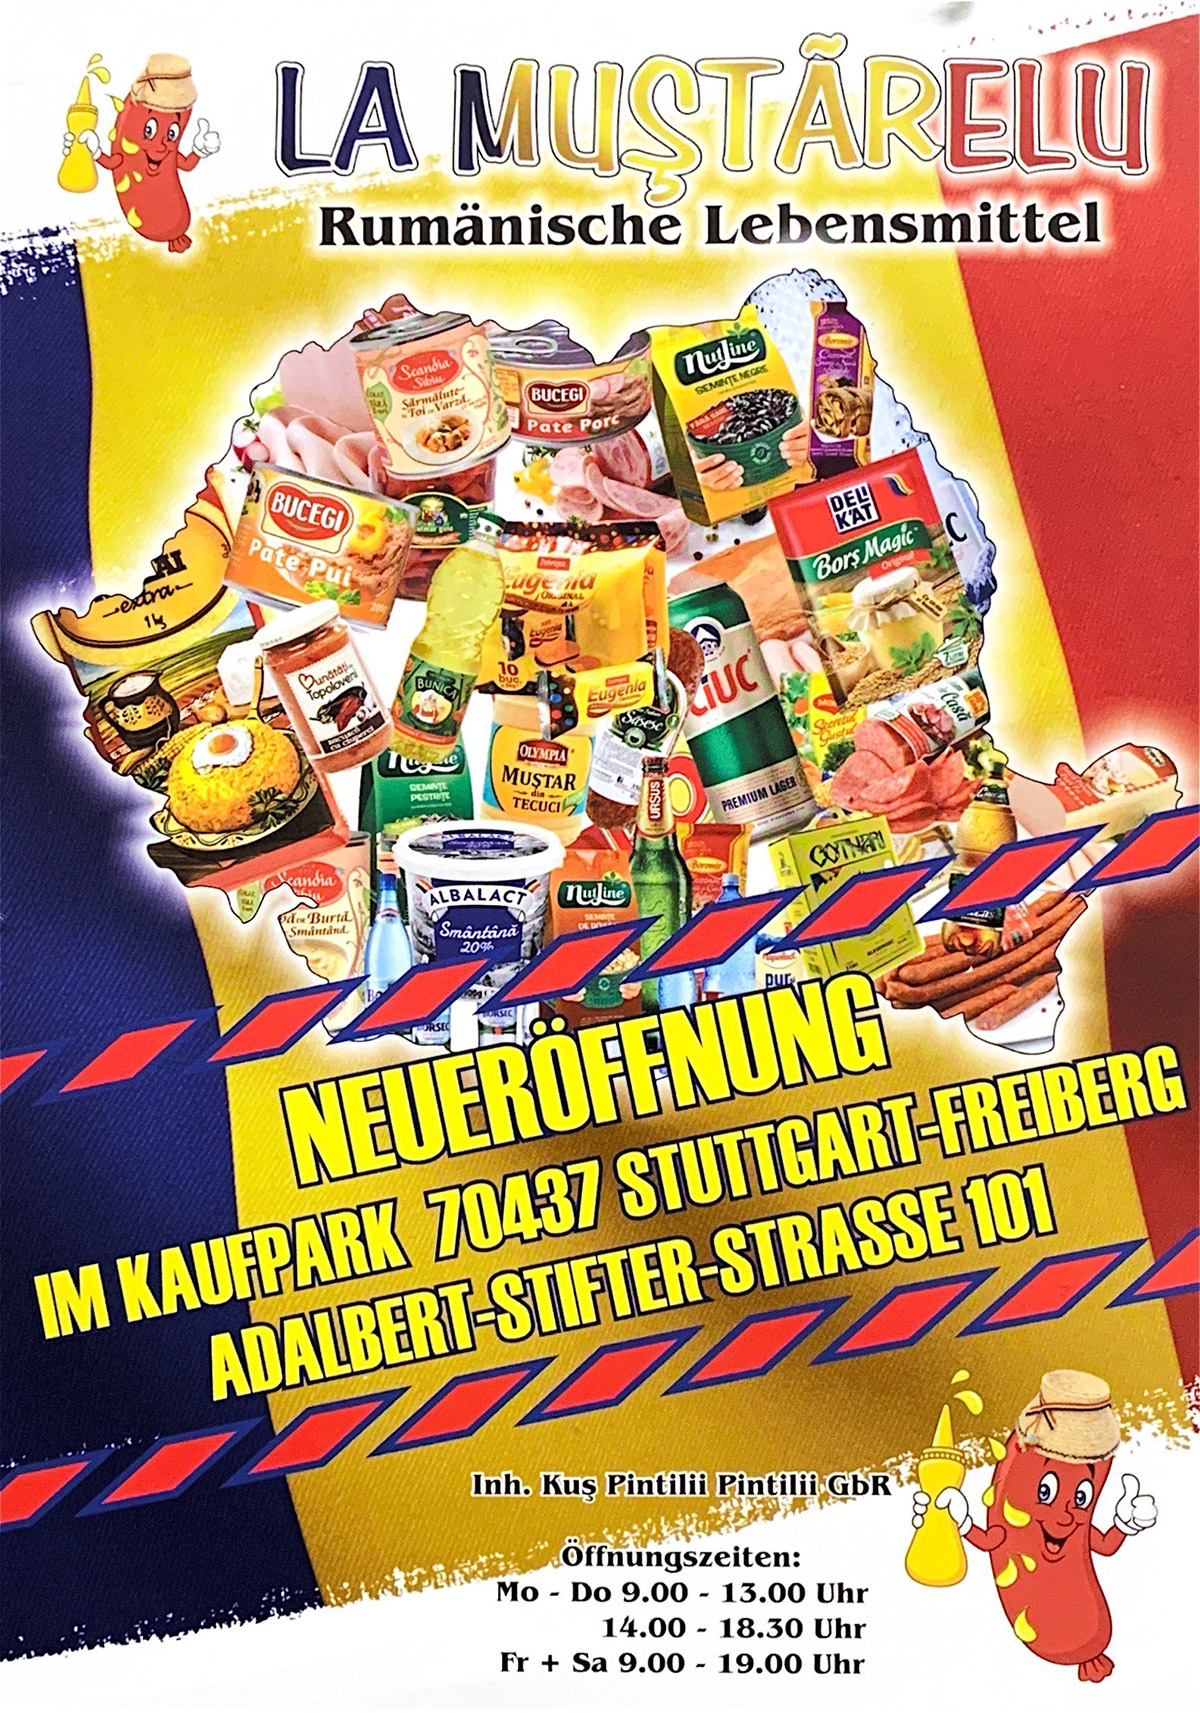 La Mustarelu - Rumänische Lebensmittel Stuttgart